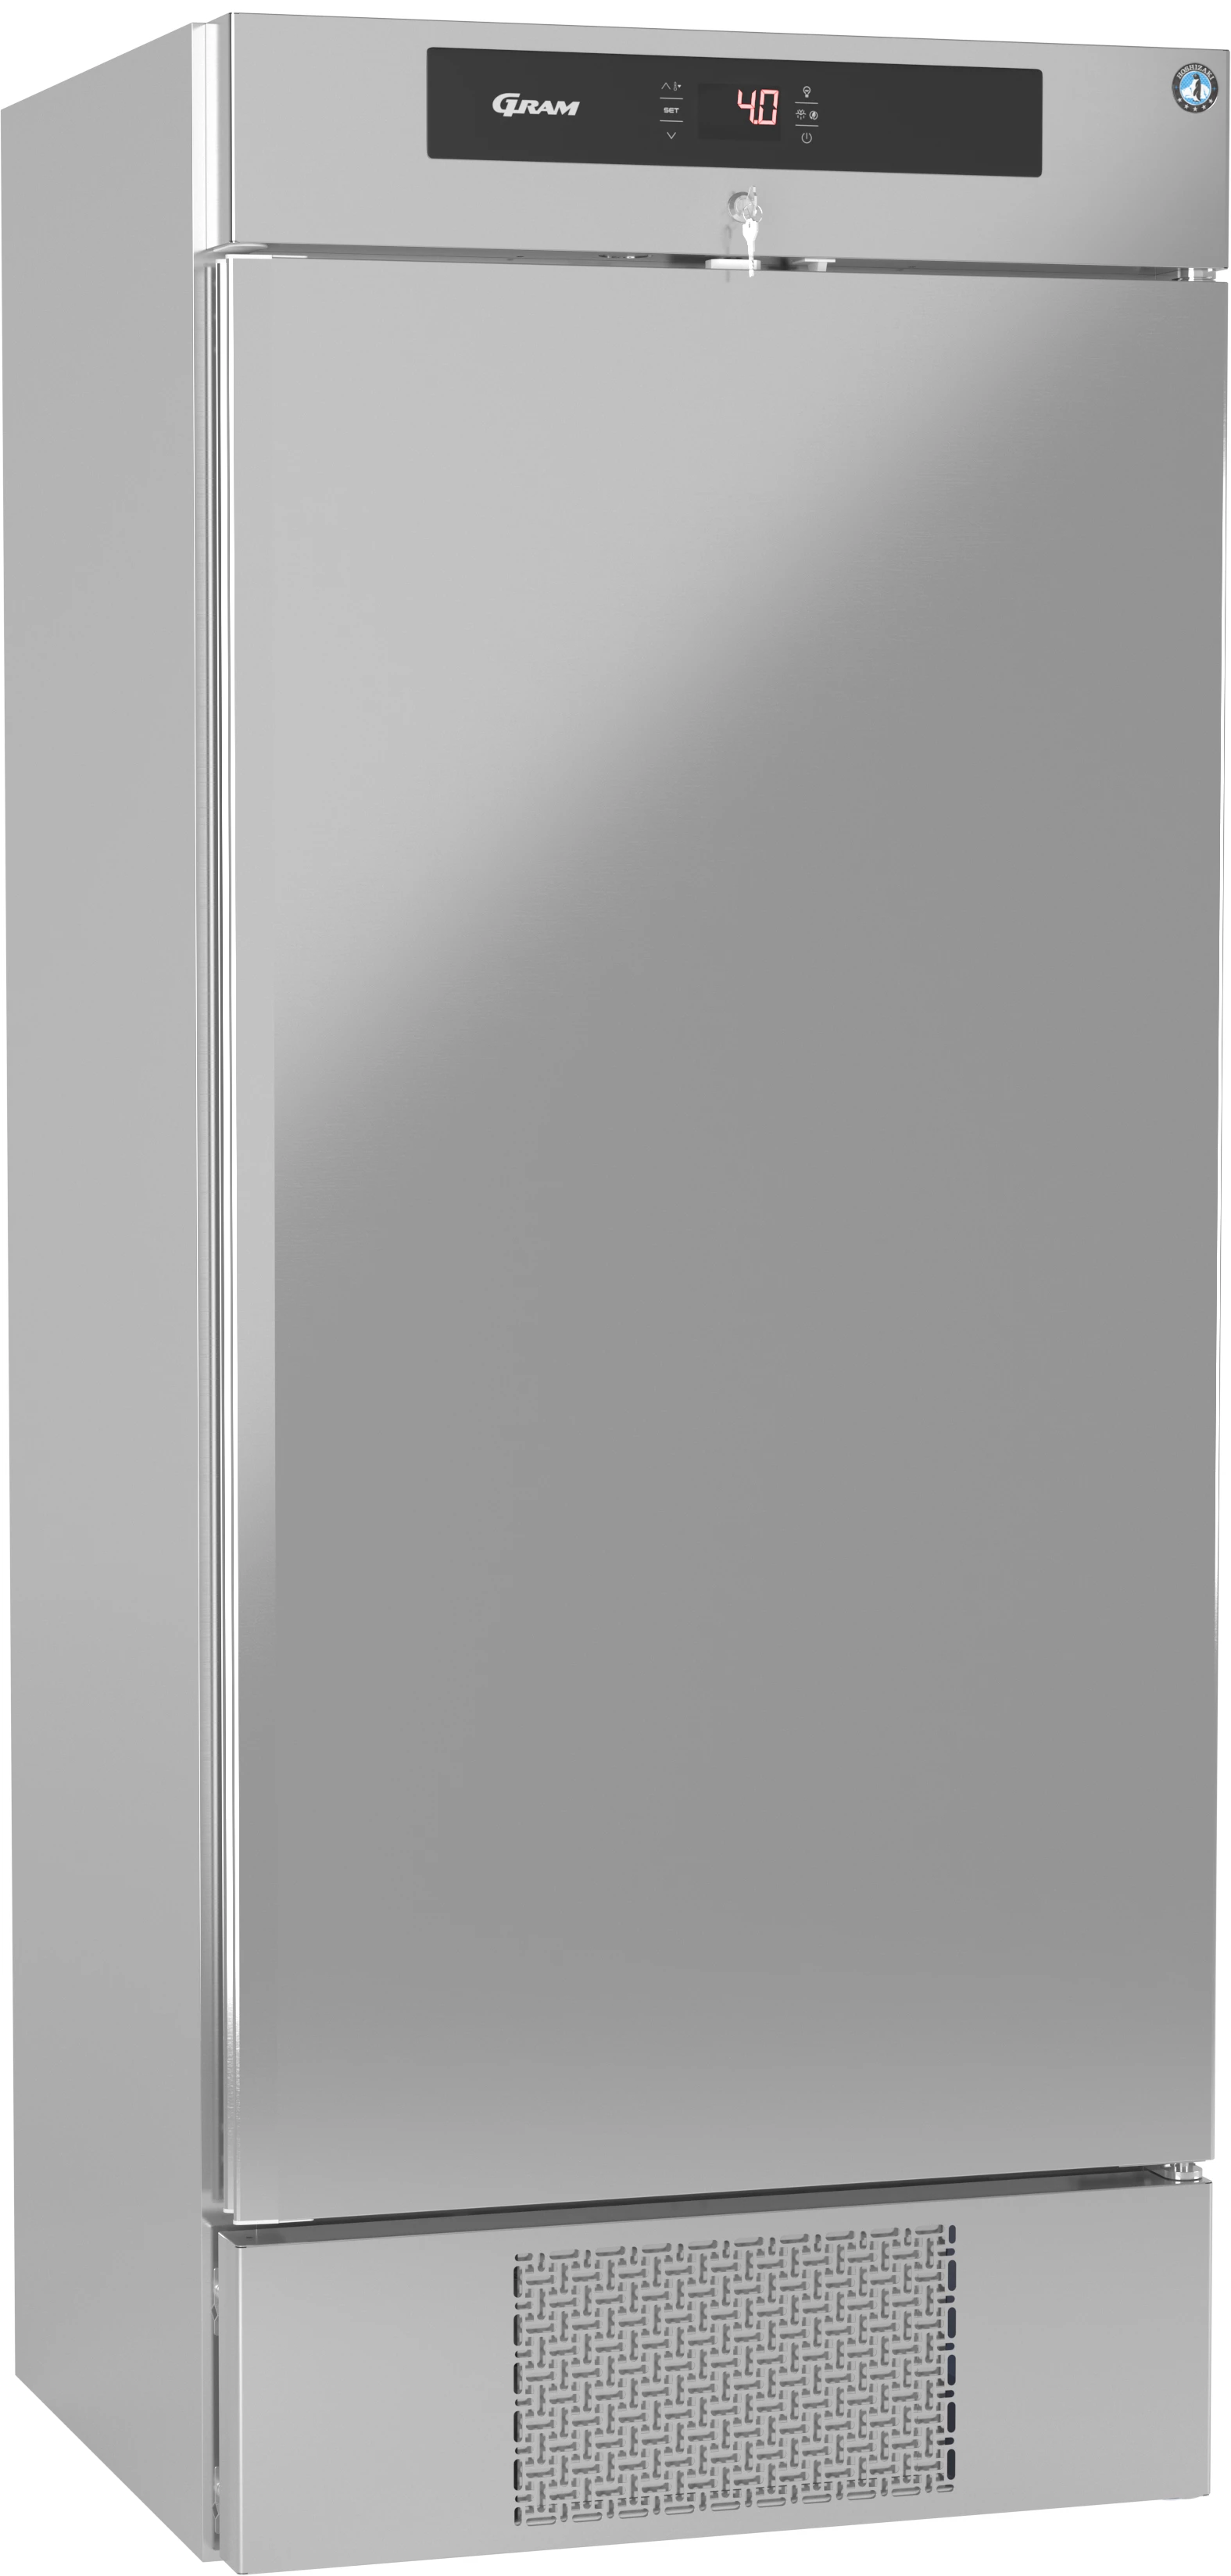 Gram Premier KBW80 DR køleskab